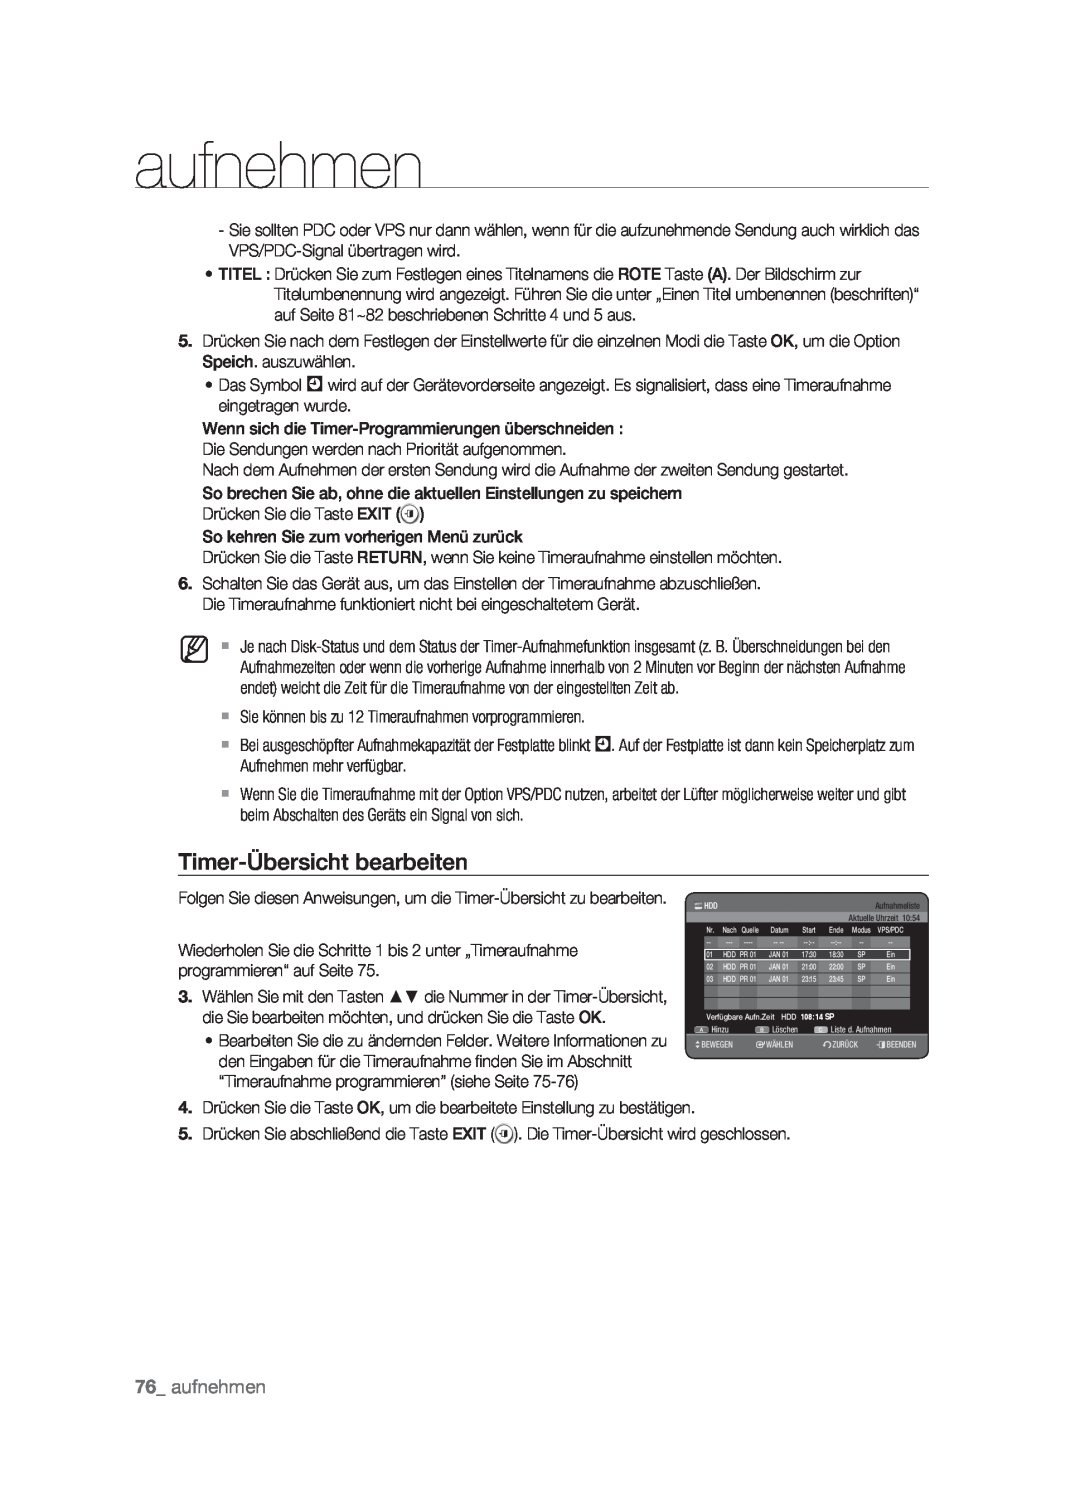 Samsung DVD-HR773/XEN, DVD-HR773/XEB, DVD-HR773/XEG, DVD-HR773/AUS manual Timer-Übersicht bearbeiten, aufnehmen 